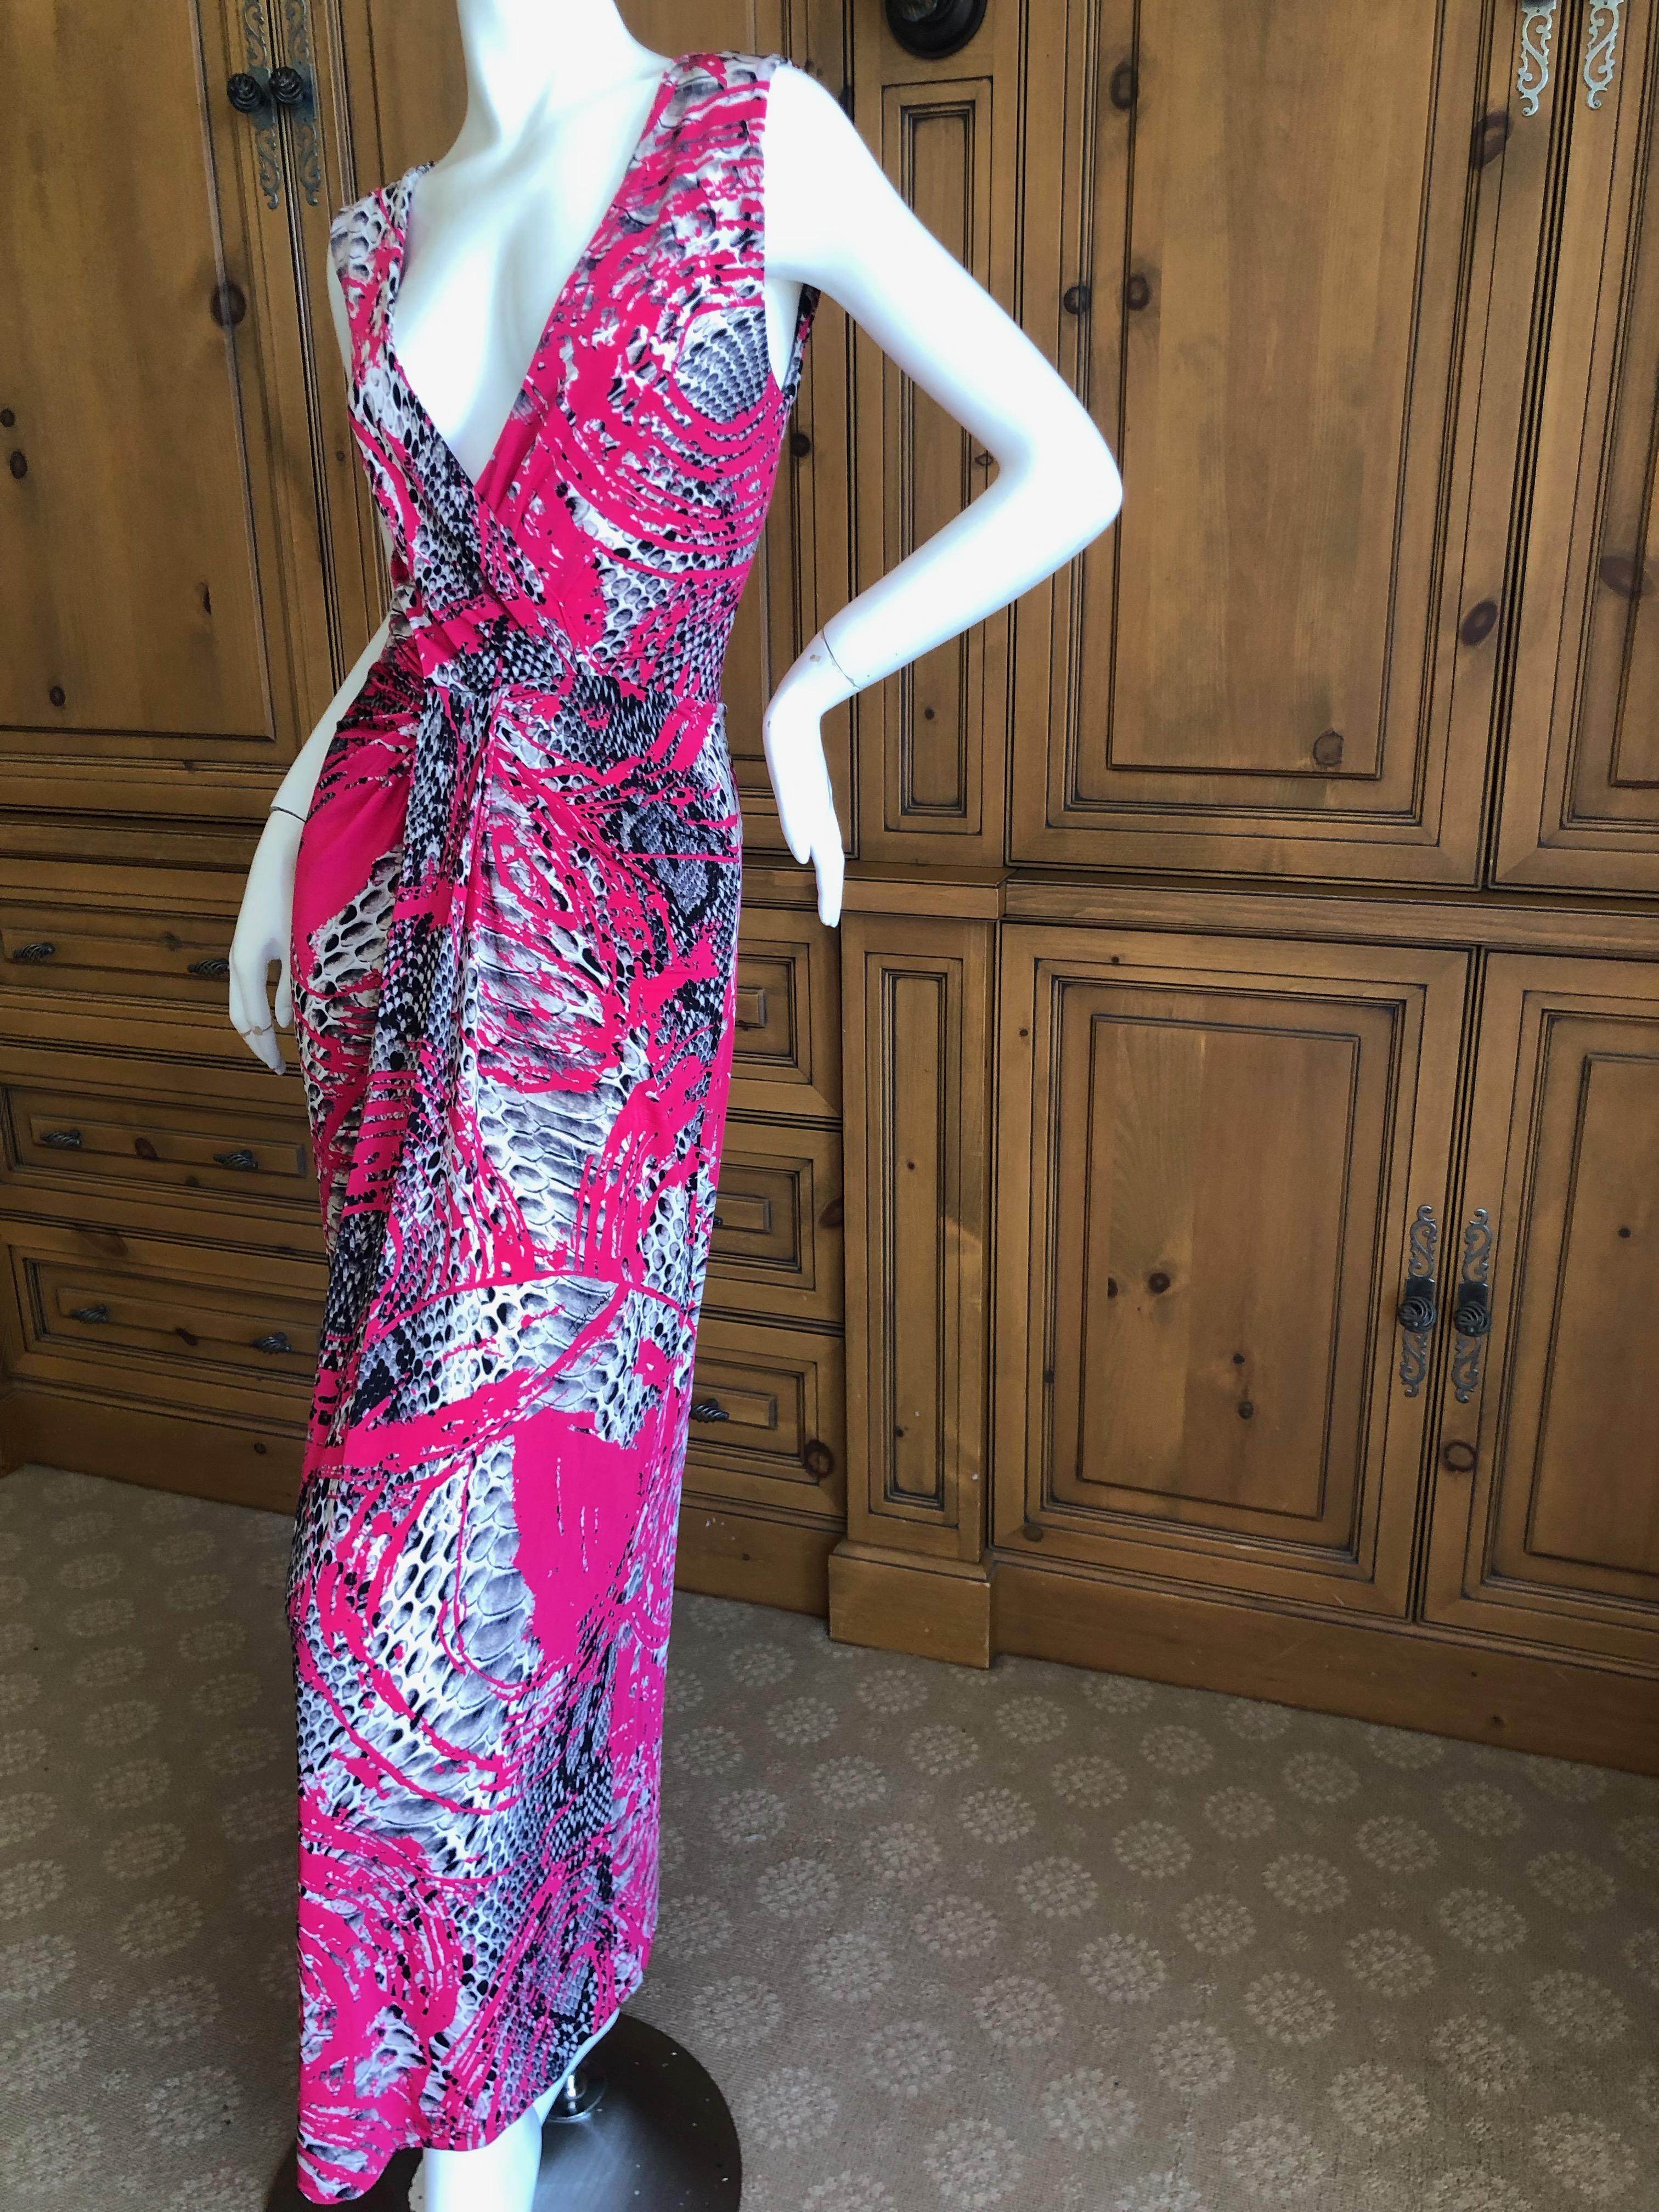 Roberto Cavalli Low Cut Zebra Pattern Evening Dress for Just Cavalli
No size tag Appx sz M-L
Bust 38